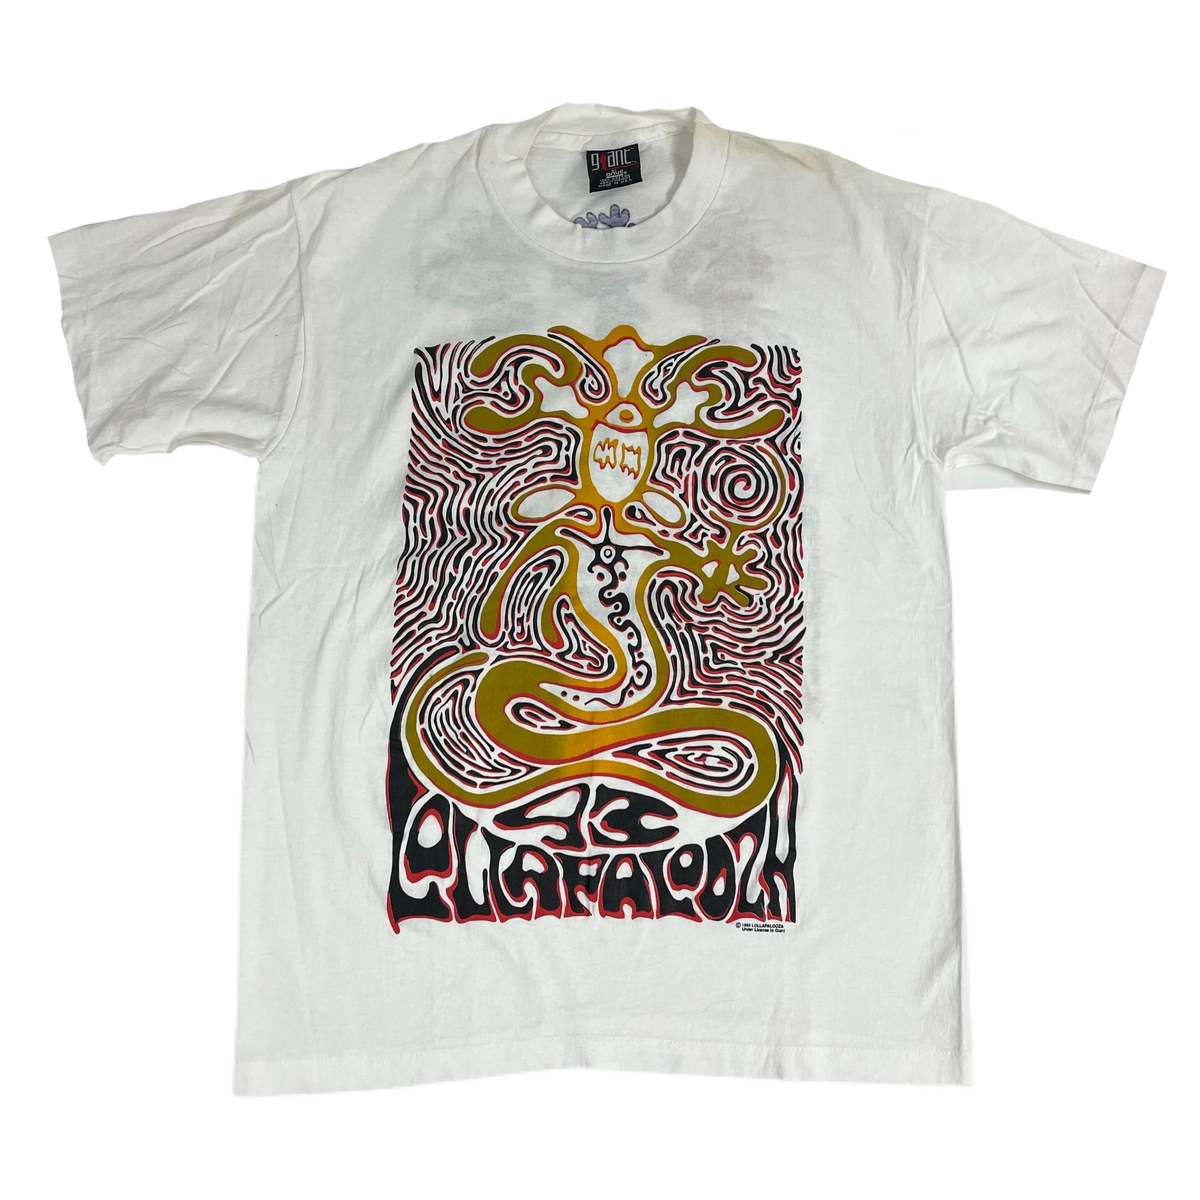 Vintage Lollapalooza &quot;1993&quot; T-Shirt